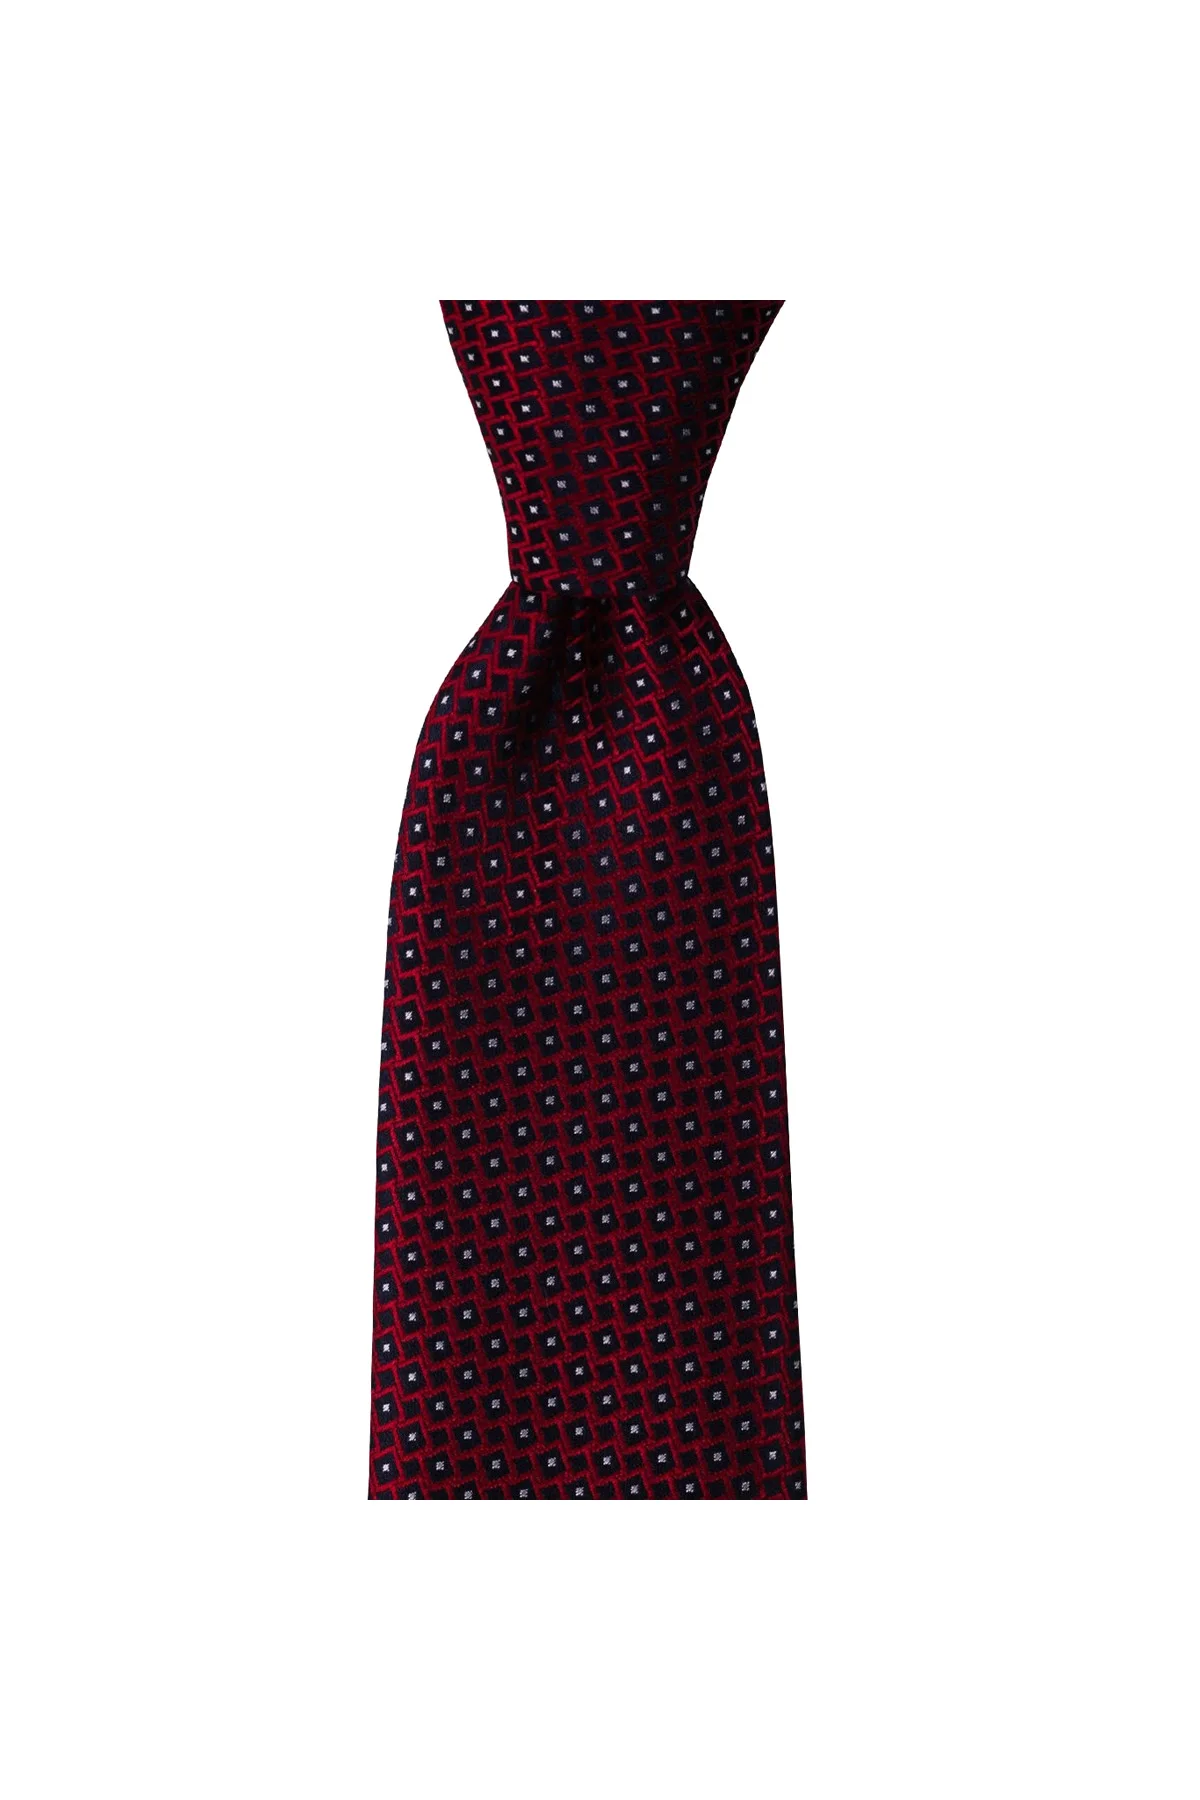 Фото Мужской галстук классического дизайна Сделано в Италии ширина 8 см длина 145